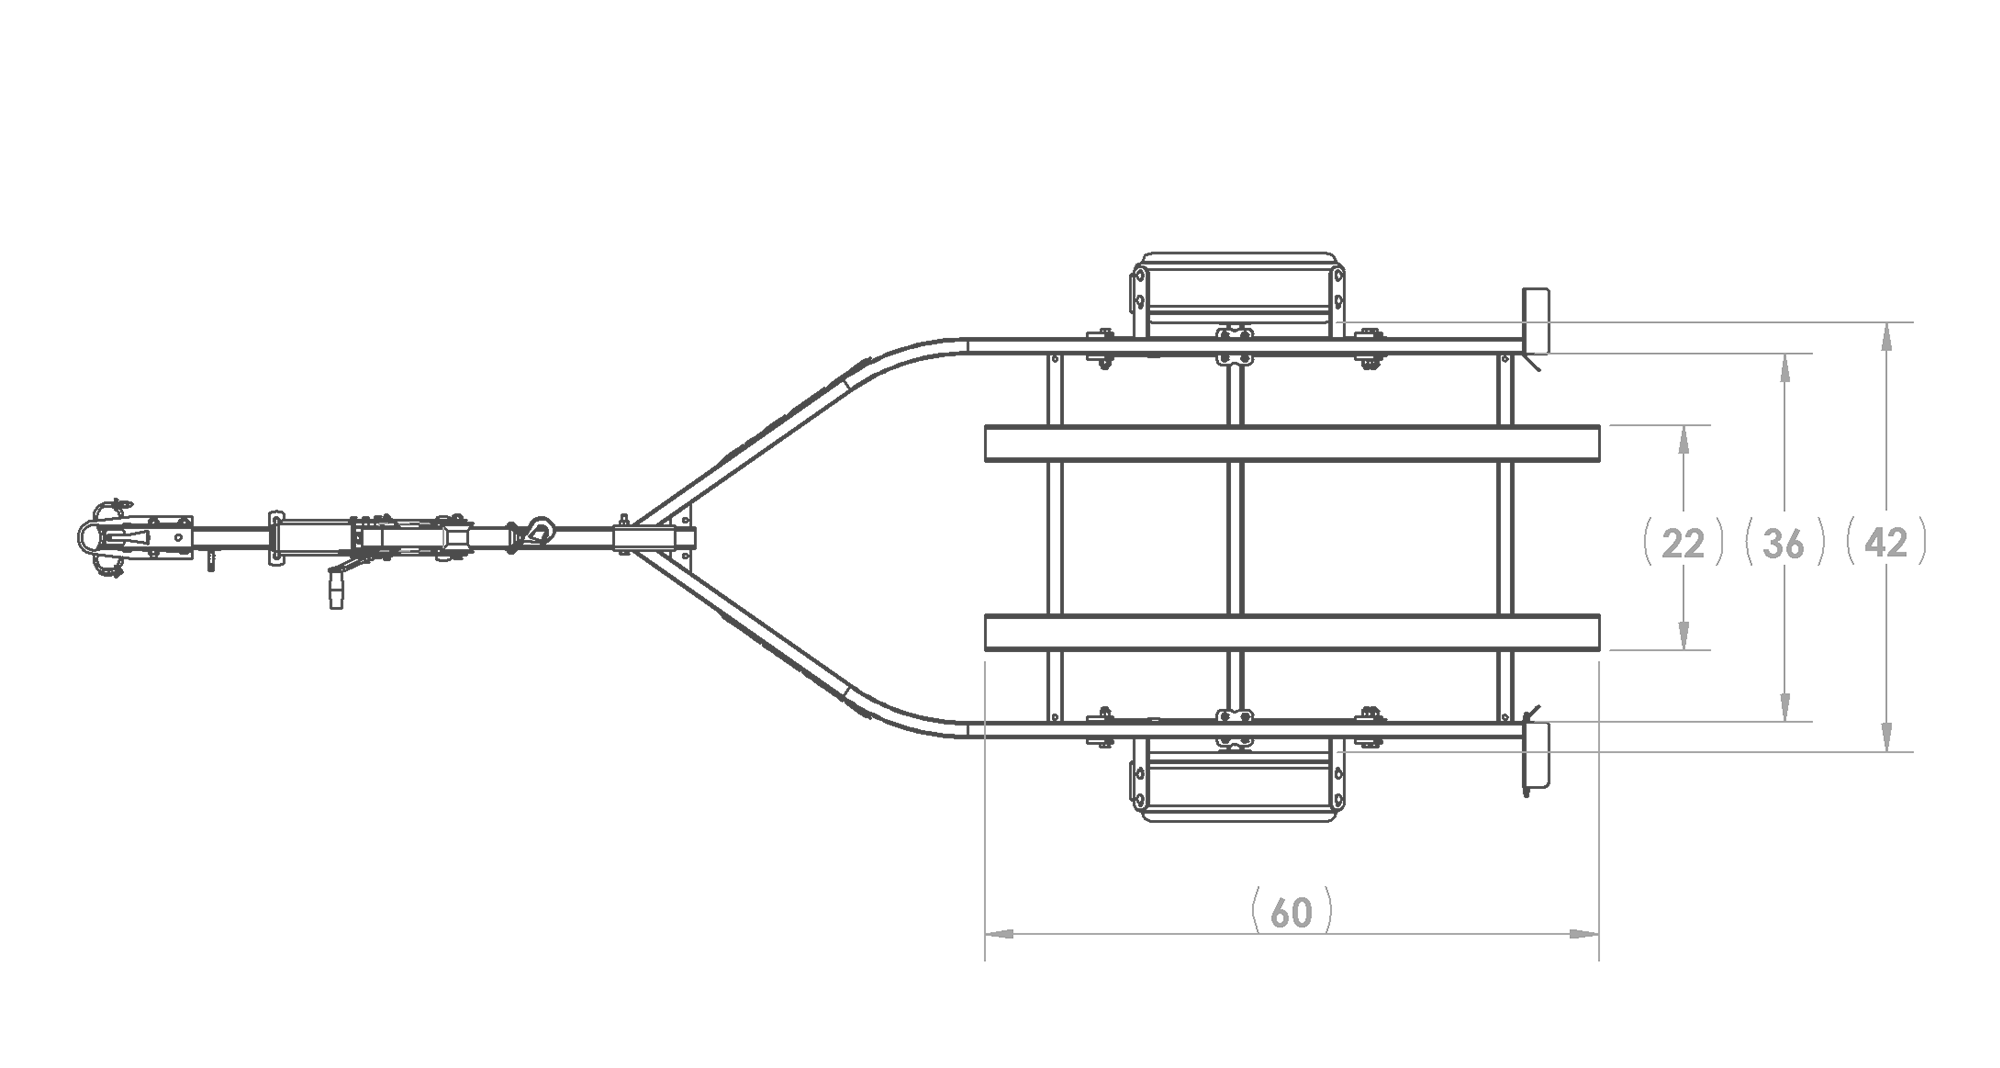 Karavan Trailer's Single Watercraft Steel Trailer, model number WCE-1250-40, Top View Measurement